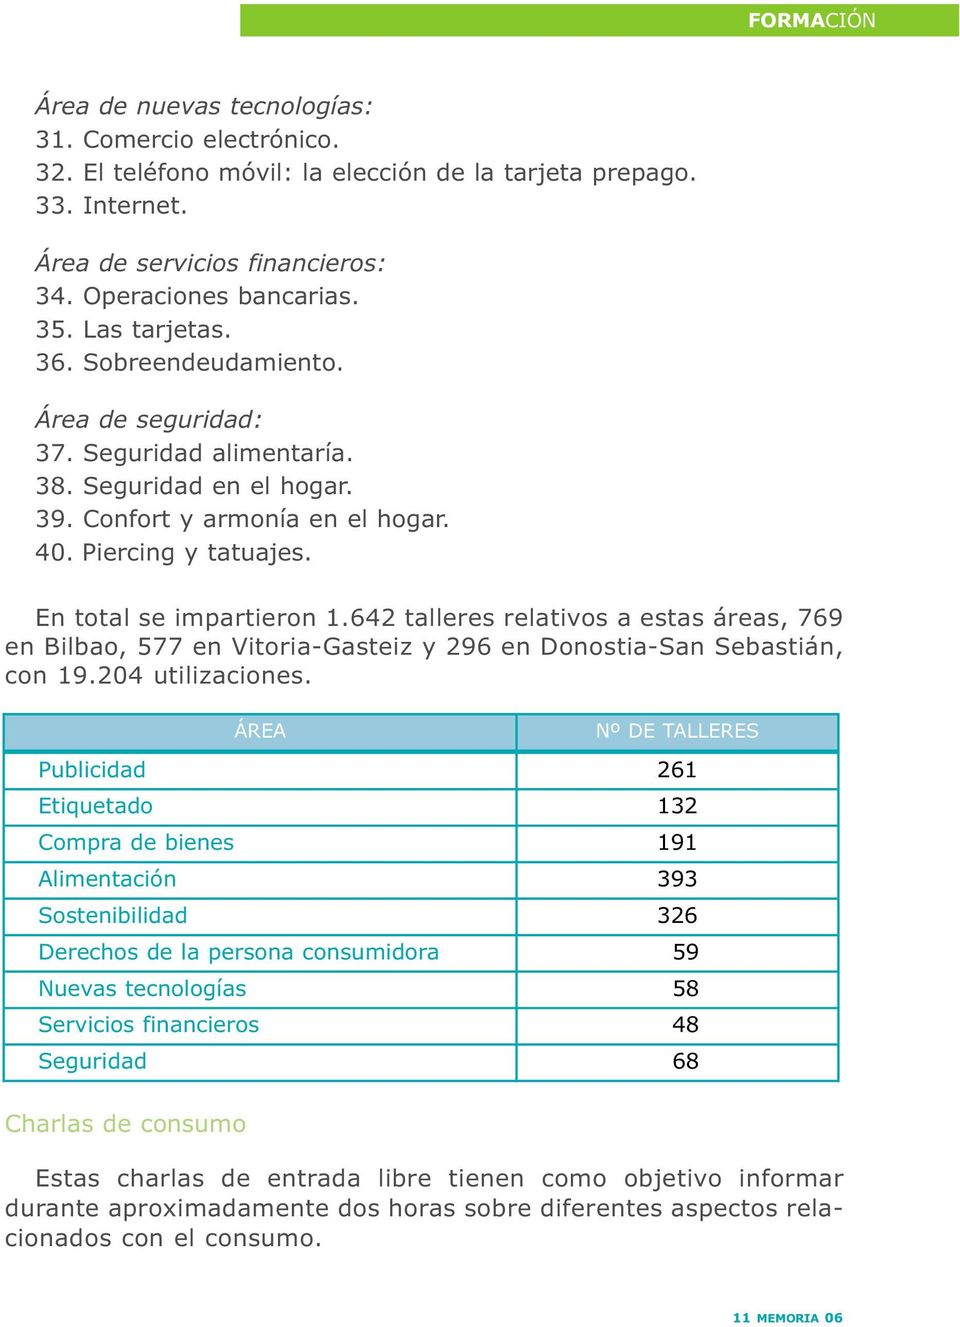 642 talleres relativos a estas áreas, 769 en Bilbao, 577 en Vitoria-Gasteiz y 296 en Donostia-San Sebastián, con 19.204 utilizaciones.